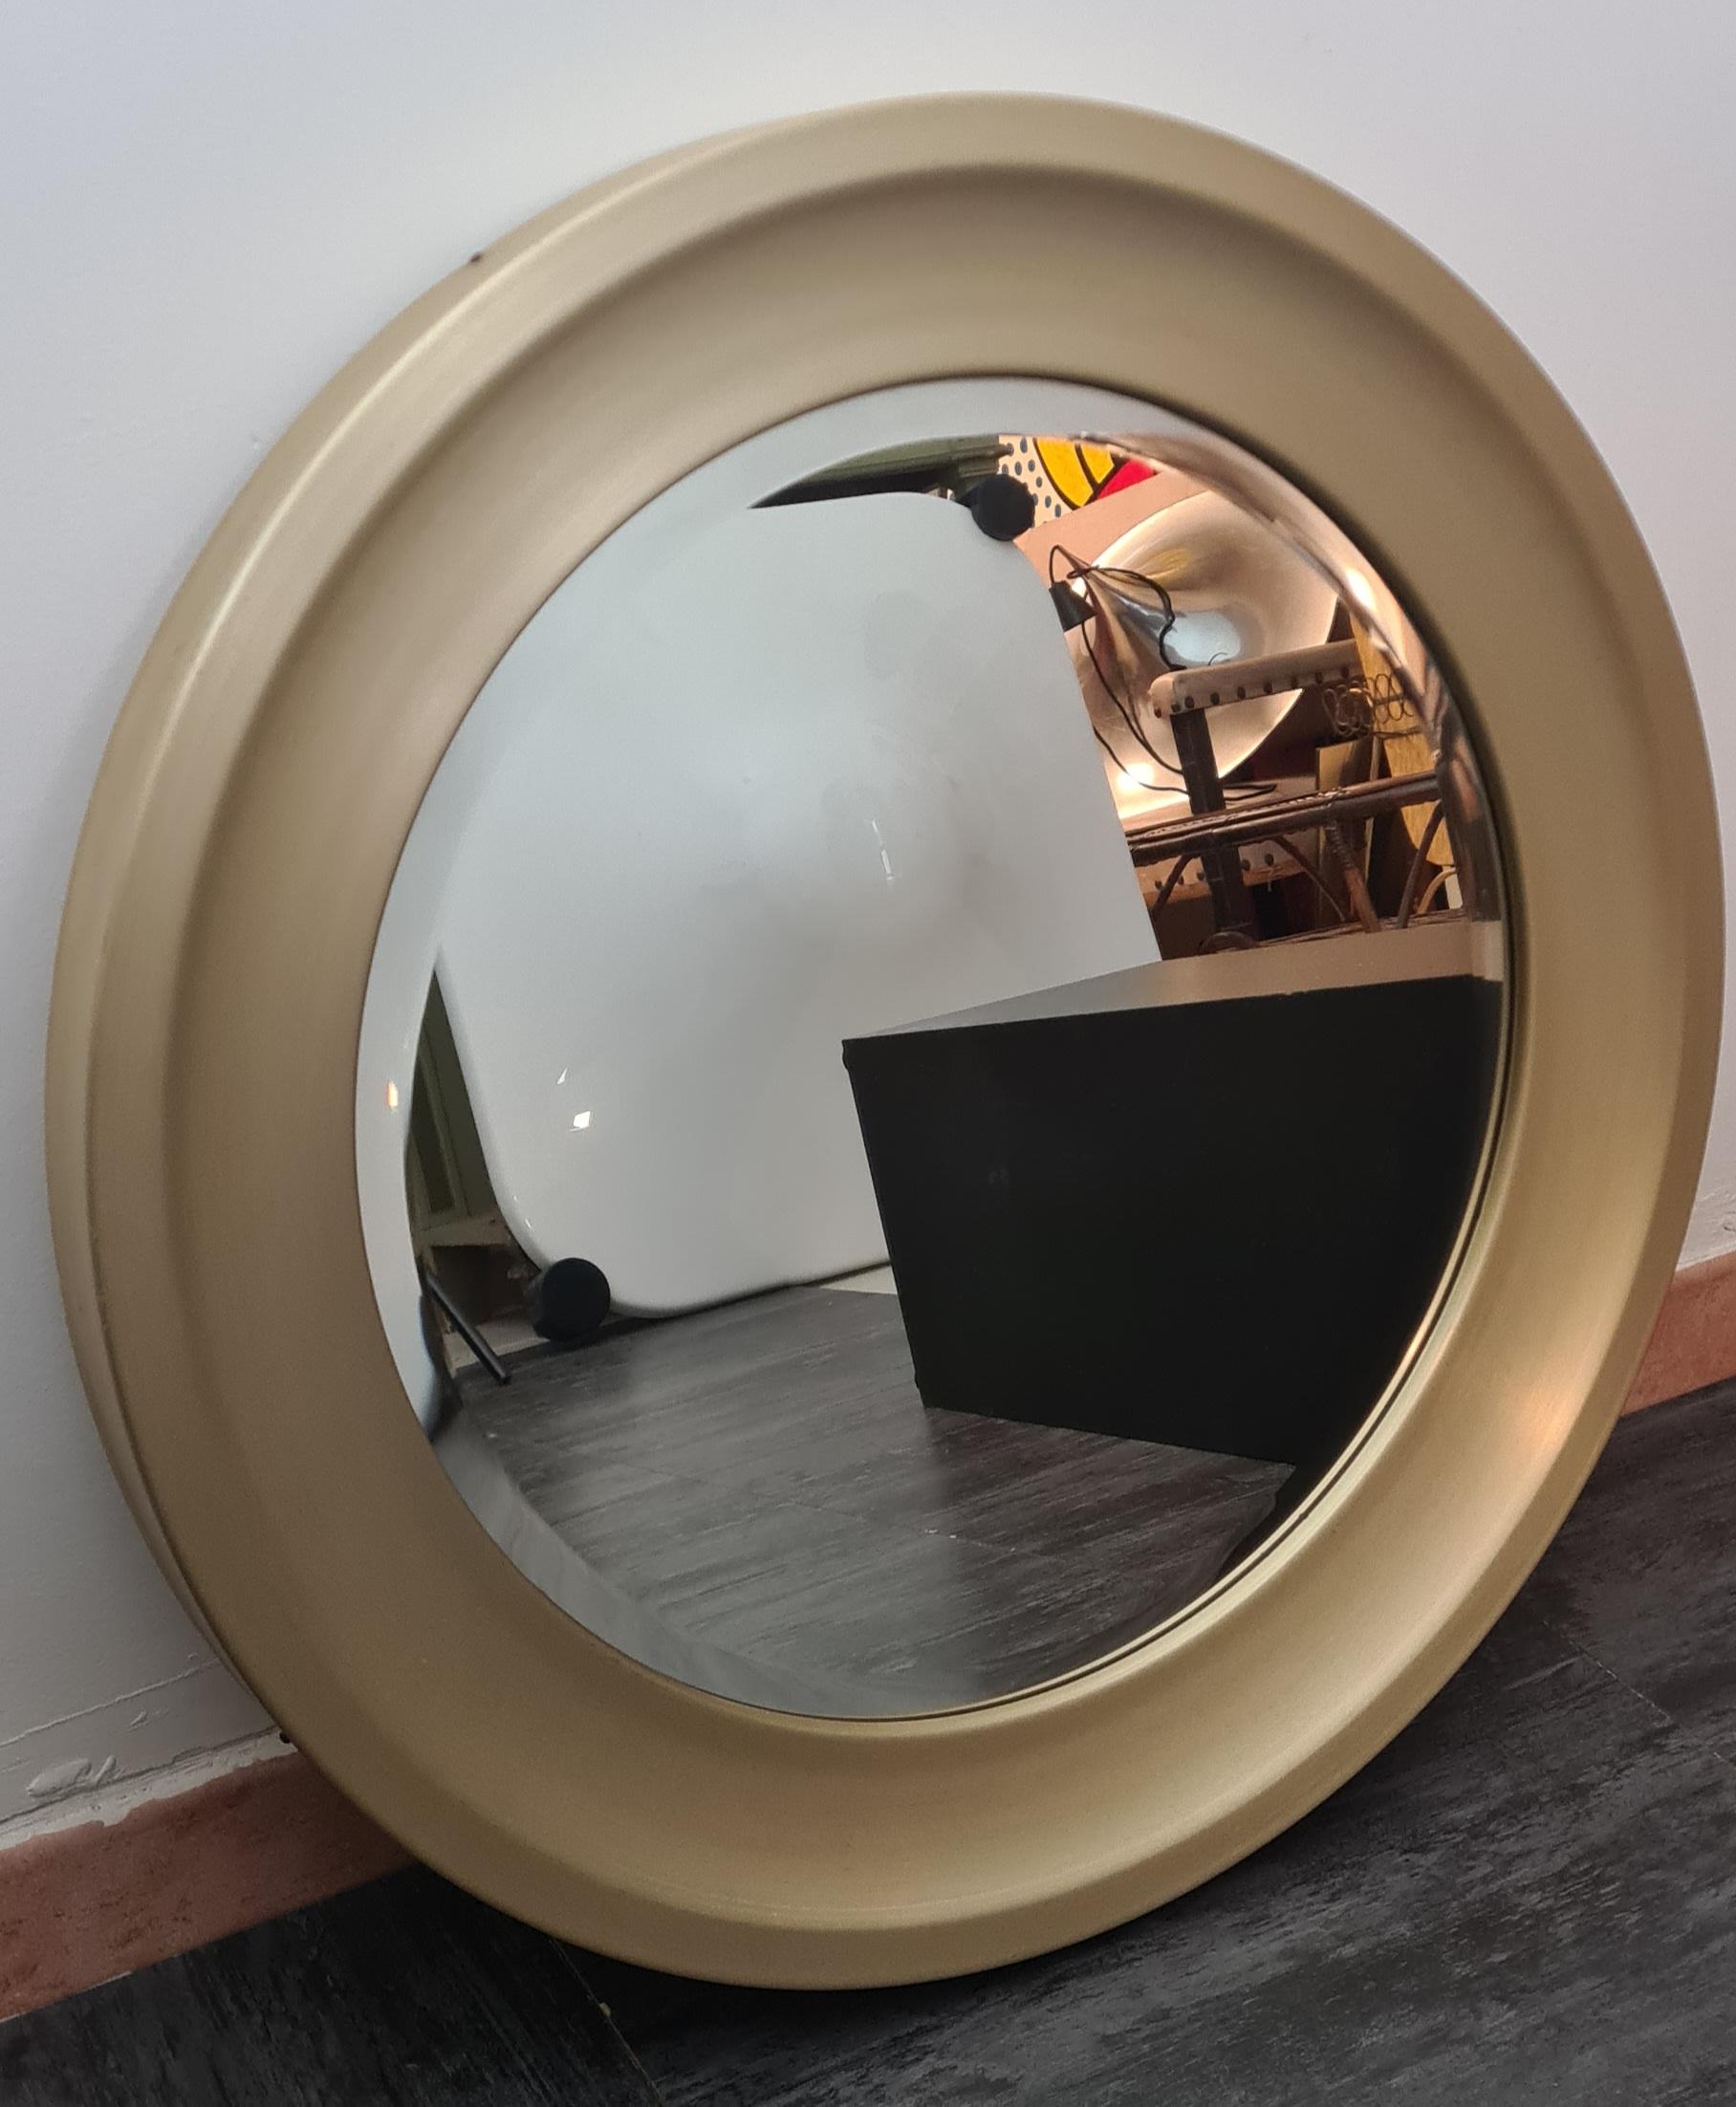 Runder Spiegel, entworfen von Sergio Mazza für Artemide.

Raffinierte Spiegel in runder Form mit abgeschrägtem Rand und einem Rahmen aus vergoldetem und gebürstetem Aluminium.

Die Rückseite des Spiegels ist aus gepresstem Holz mit einem Haken zum